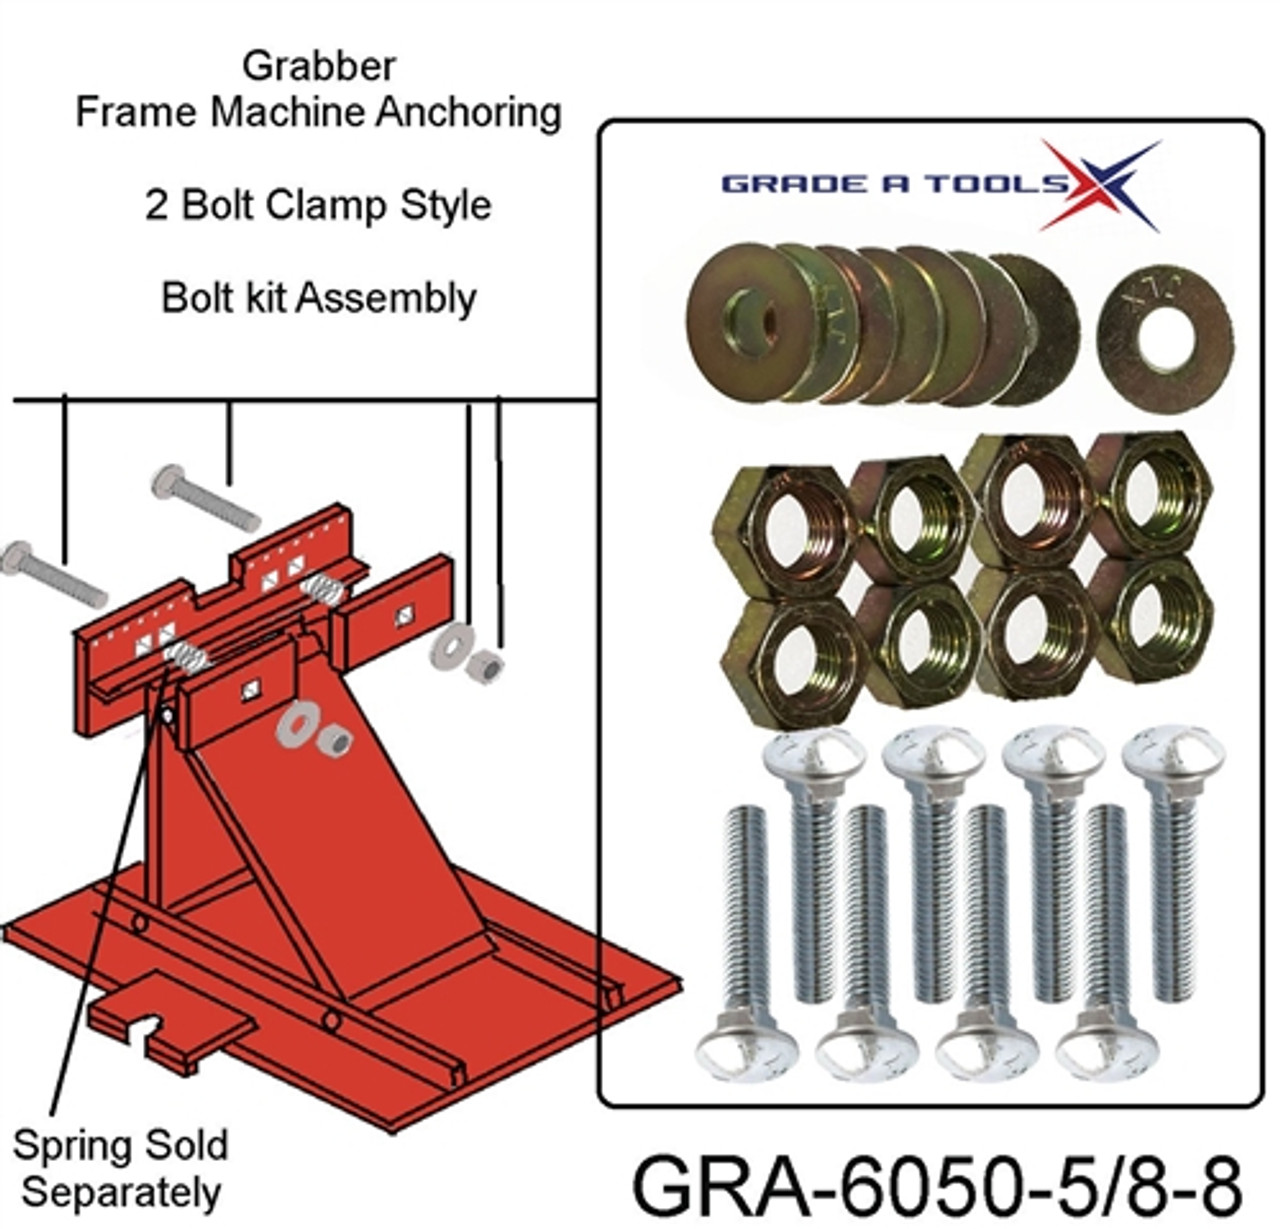 Grabber Frame Anchoring System Bolt kit 1